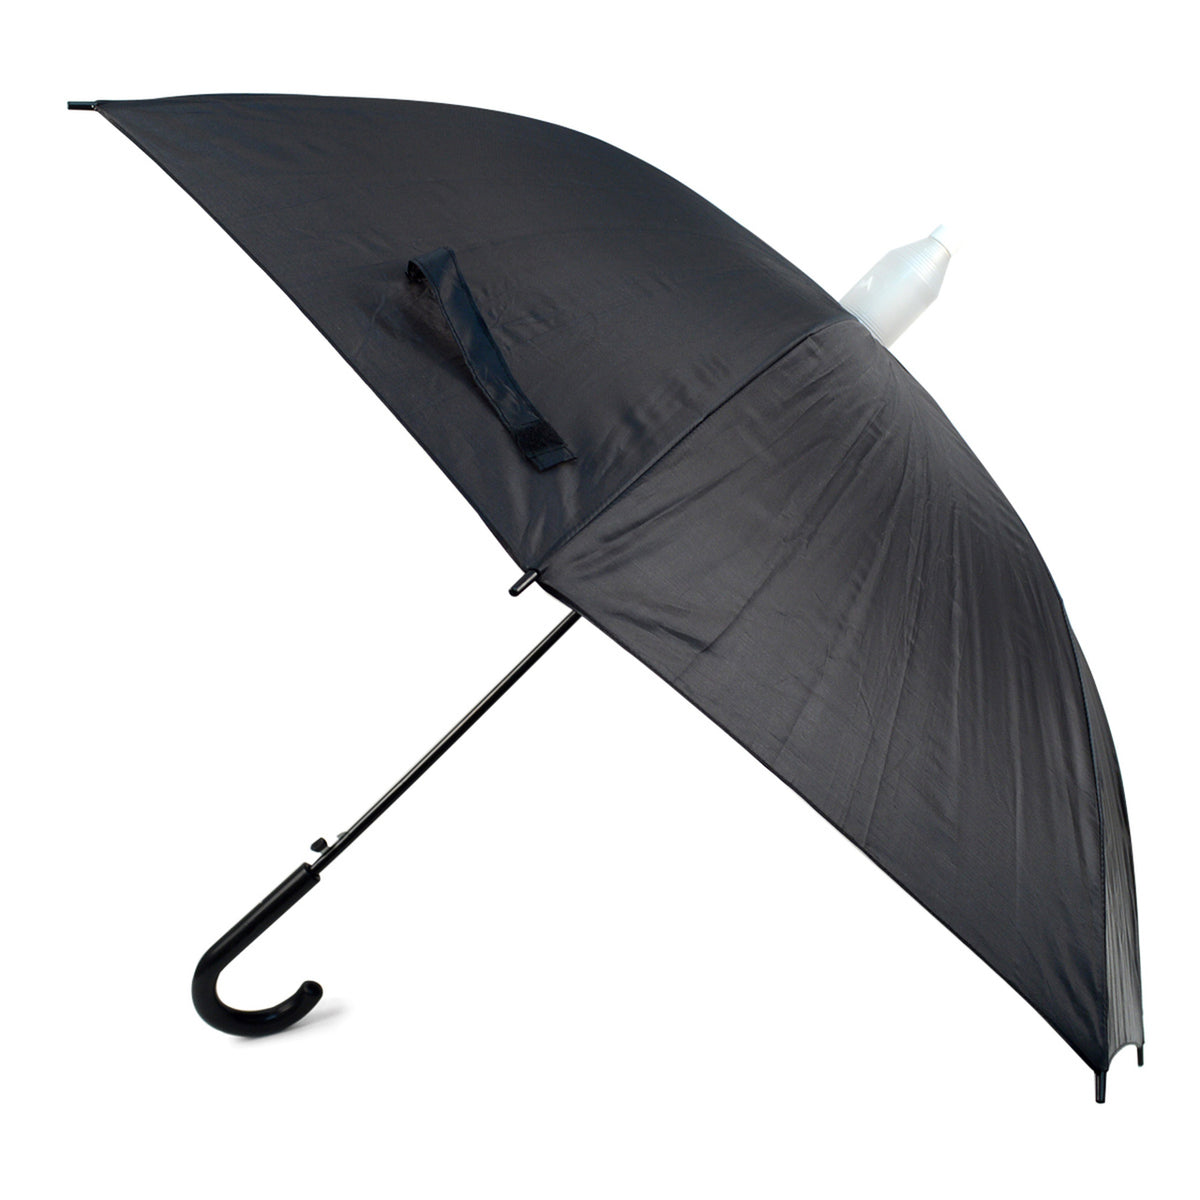 Selini Auto Open, Black, Canopy Umbrella with Plastic Cover